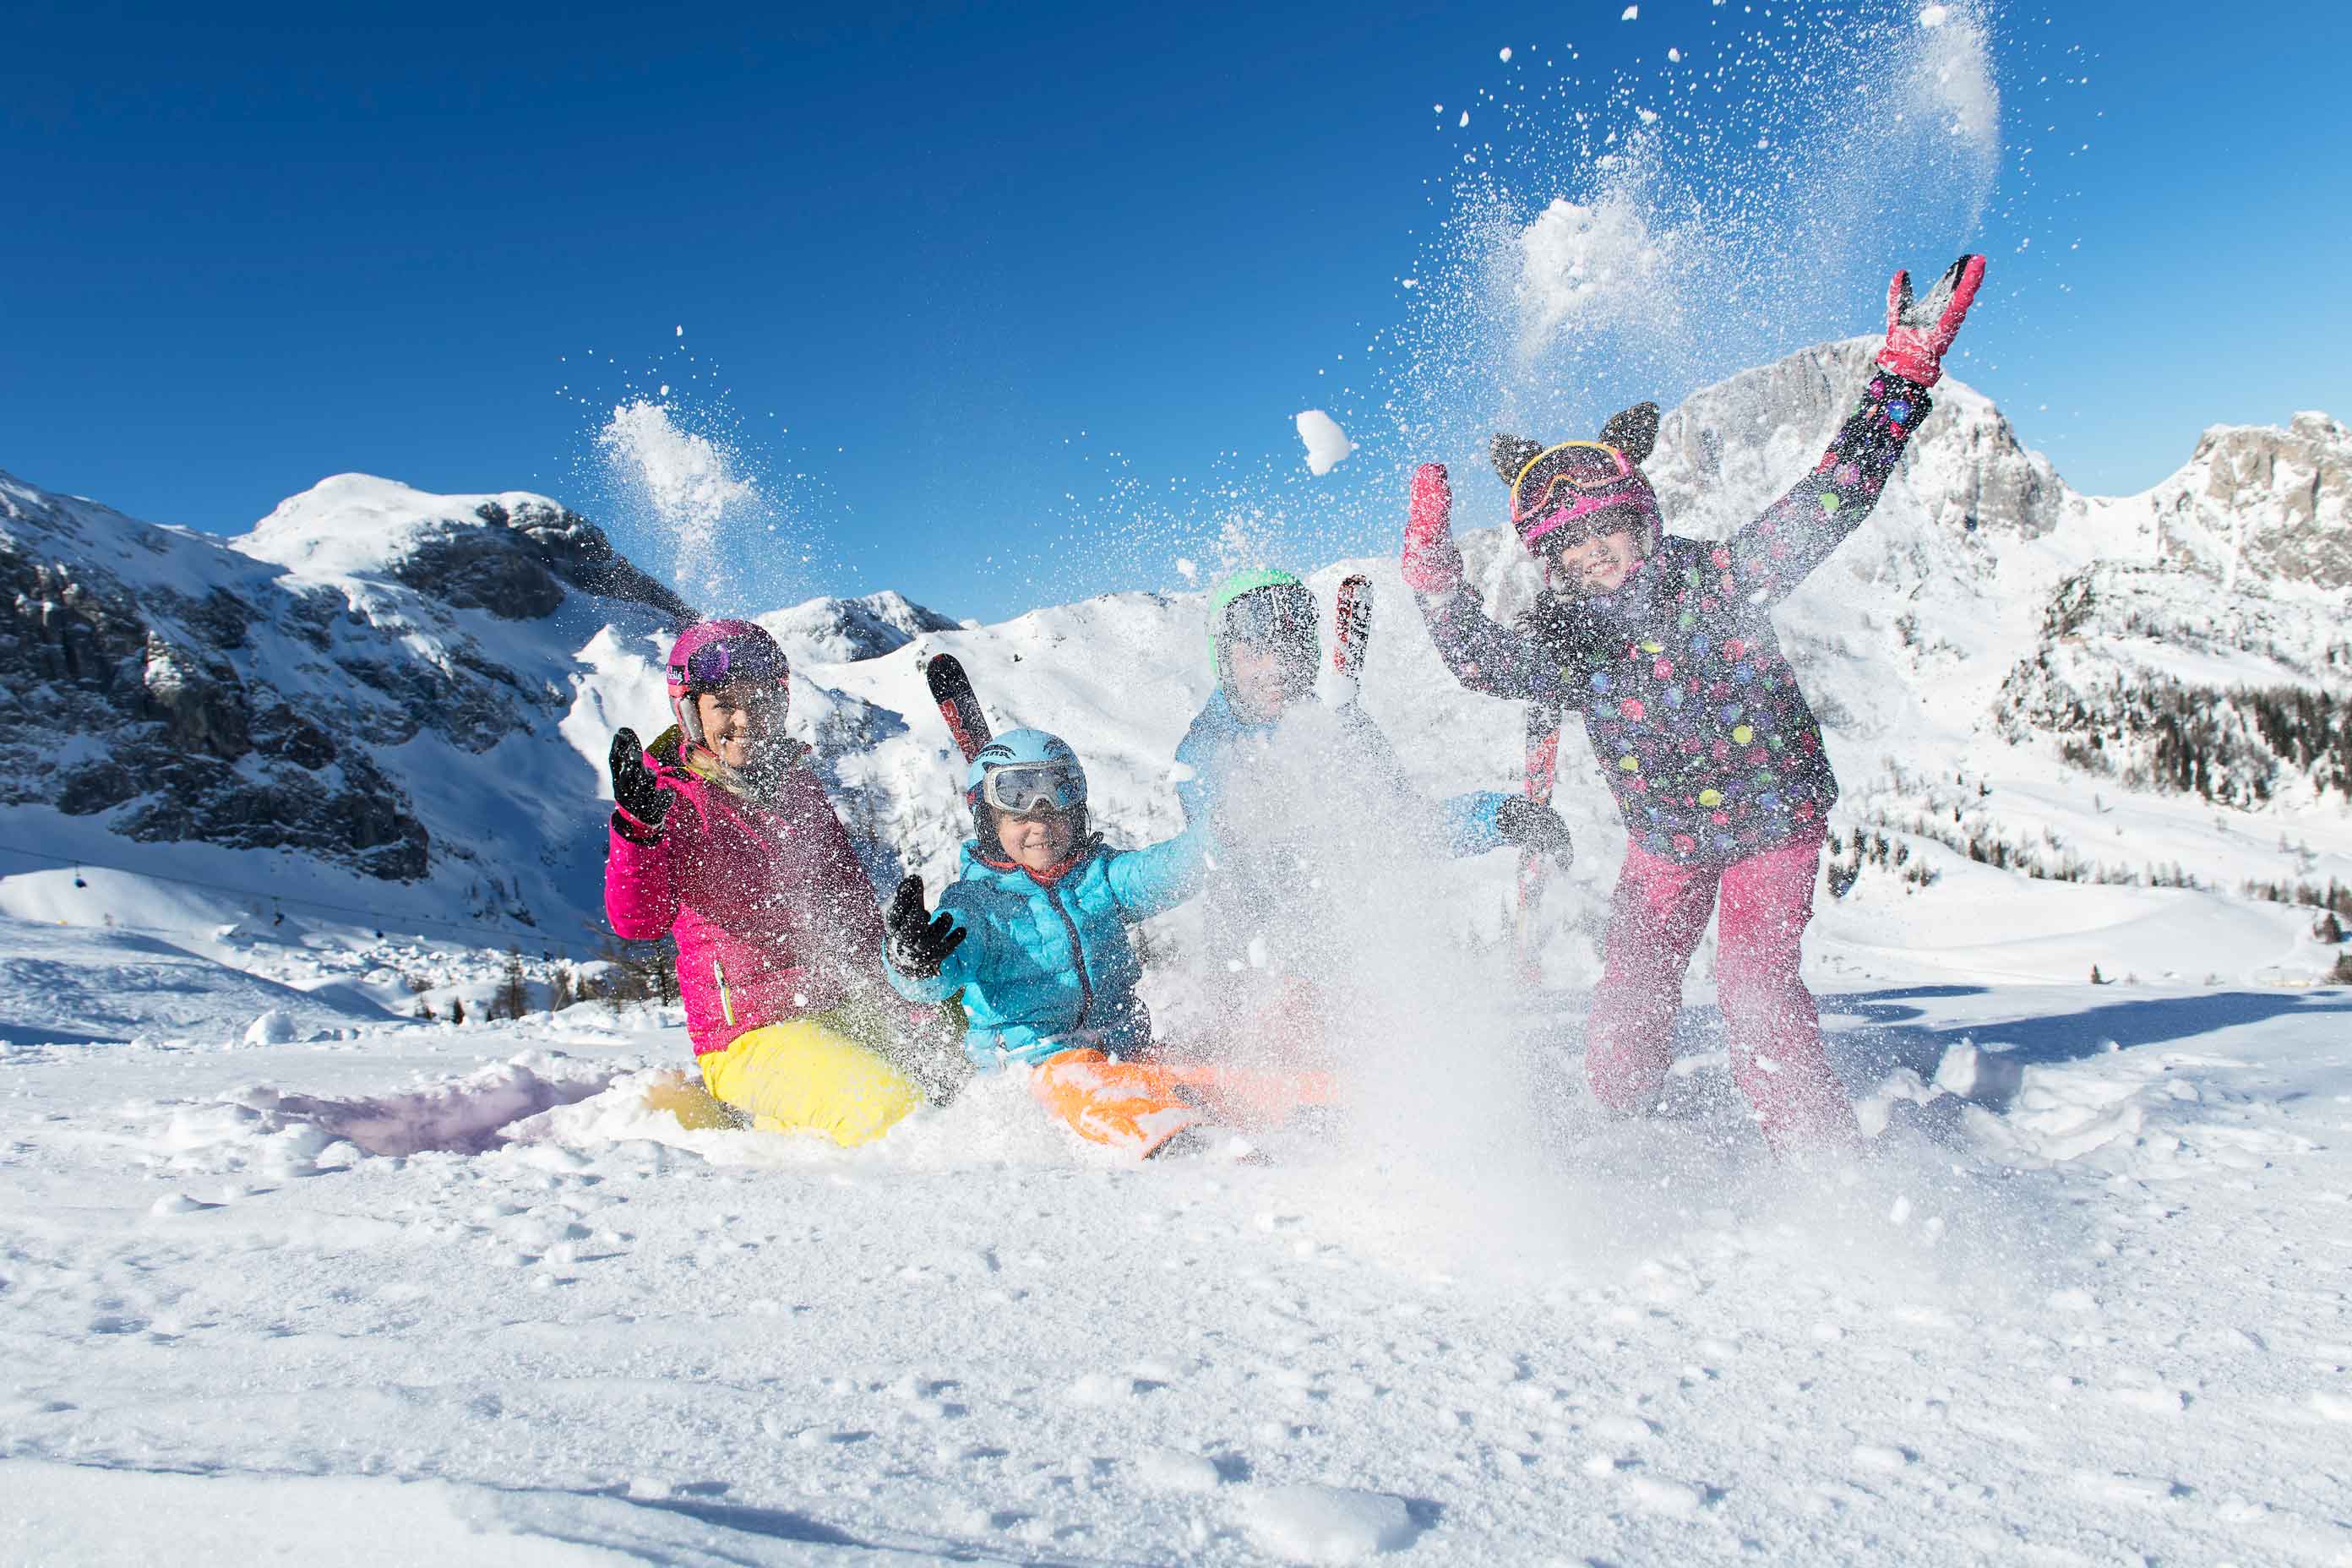 Unlimited skiing fun in the world-class Nassfeld ski area